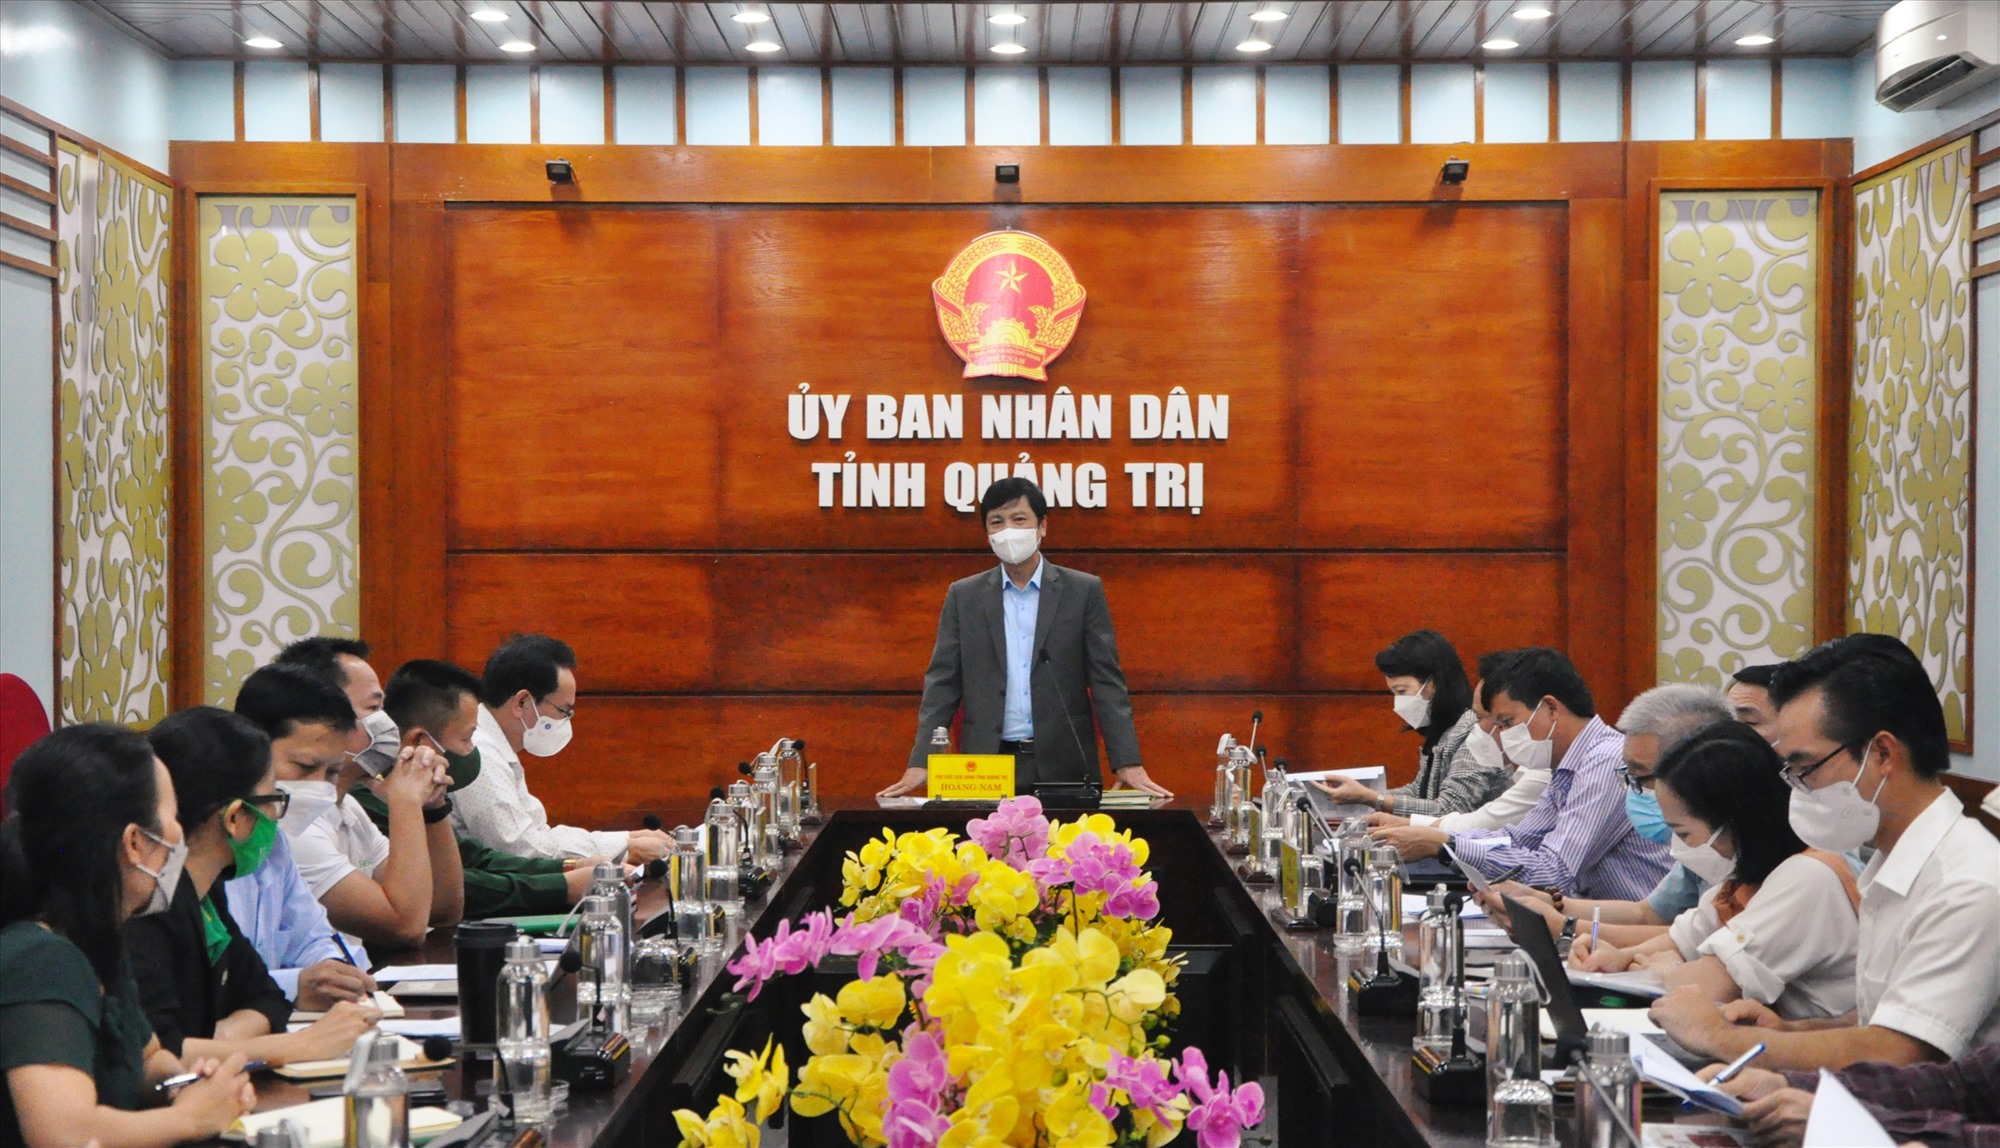 Phó Chủ tịch UBND tỉnh Hoàng Nam phát biểu tại cuộc họp - Ảnh: Q.H